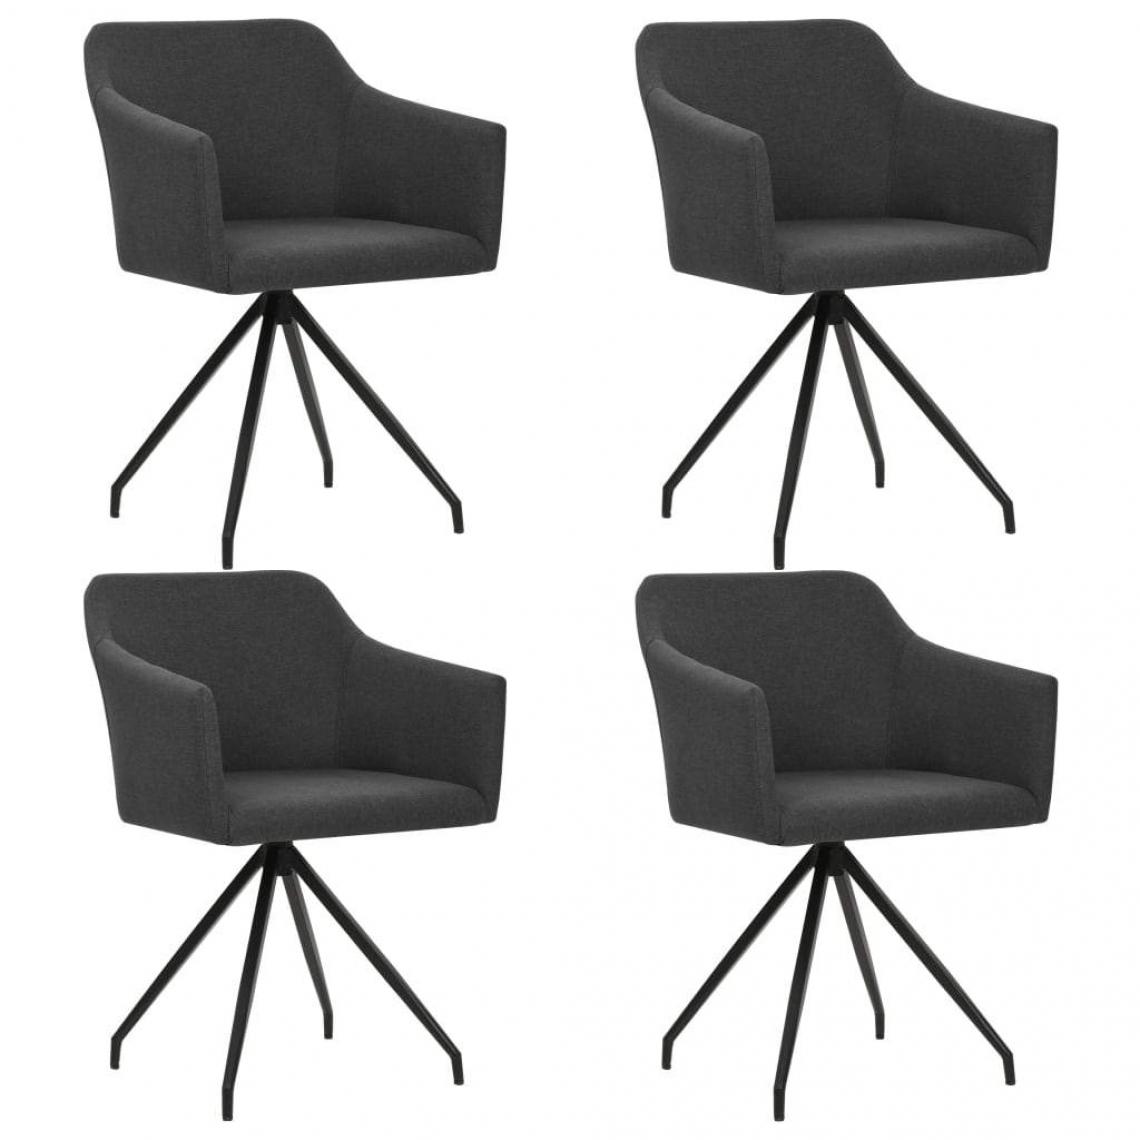 Decoshop26 - Lot de 4 chaises de salle à manger cuisine design moderne tissu gris foncé CDS021542 - Chaises